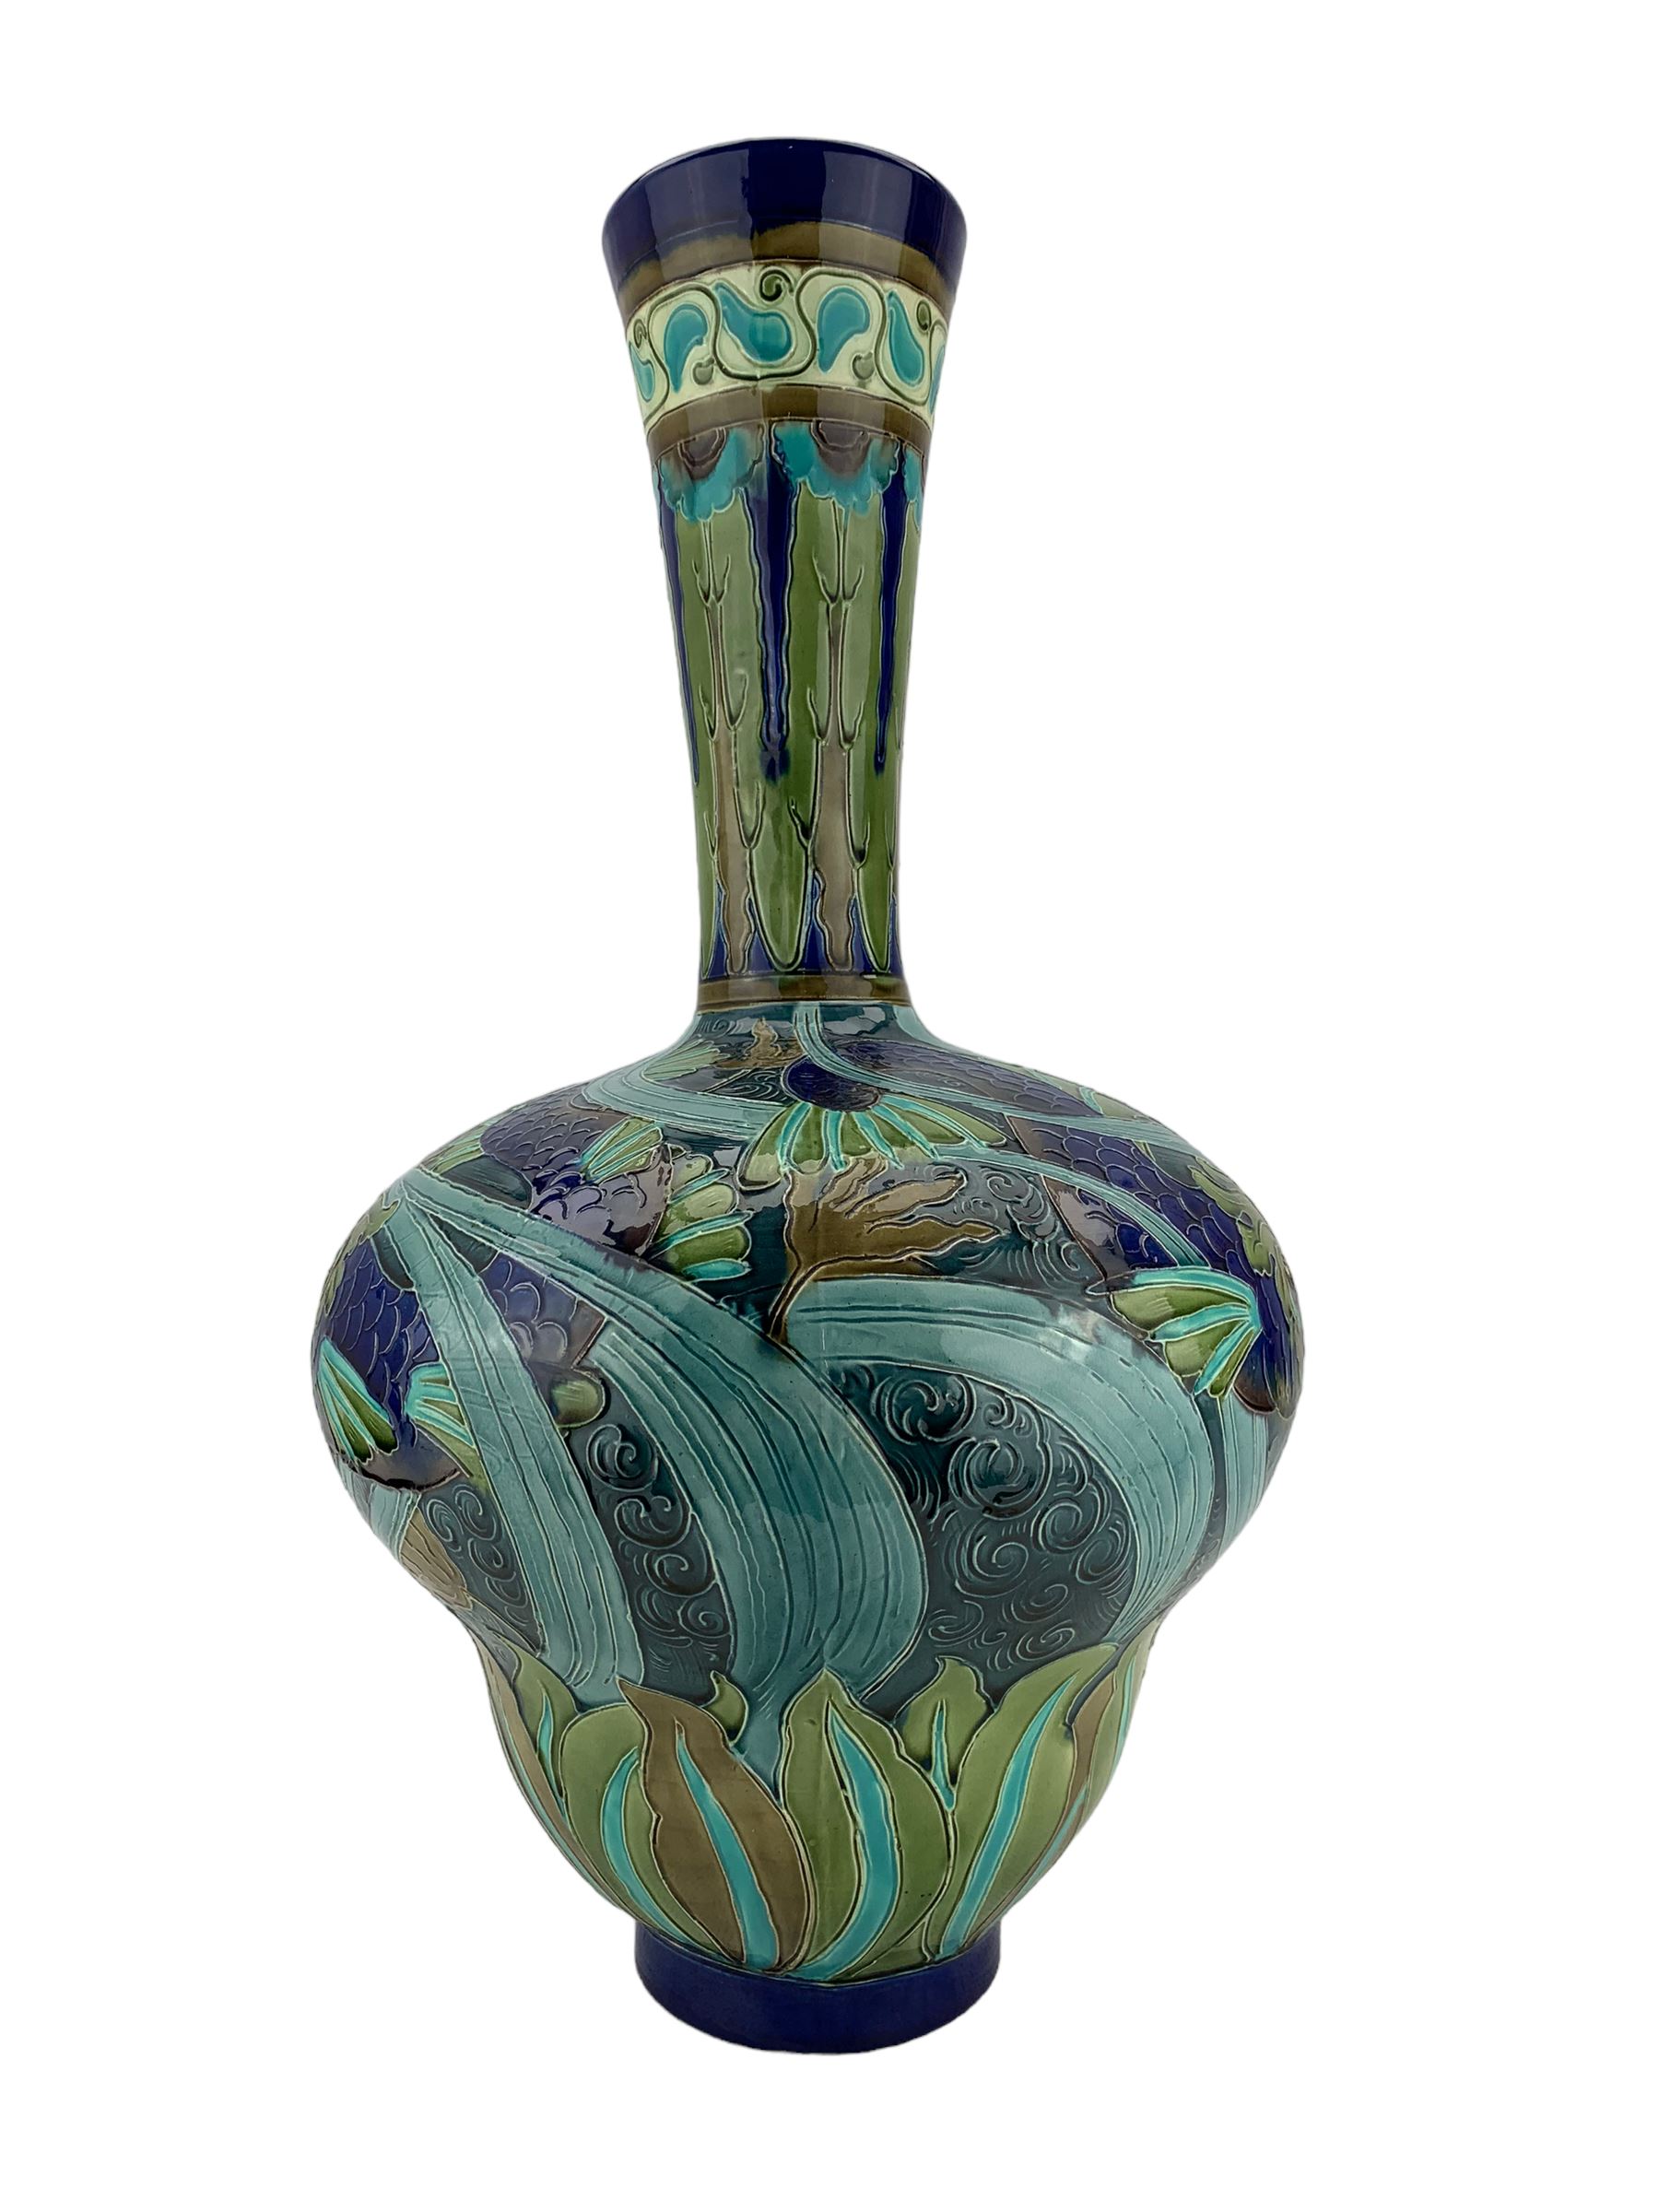 Large Burmantofts Faience partie-colour vase - Image 4 of 6